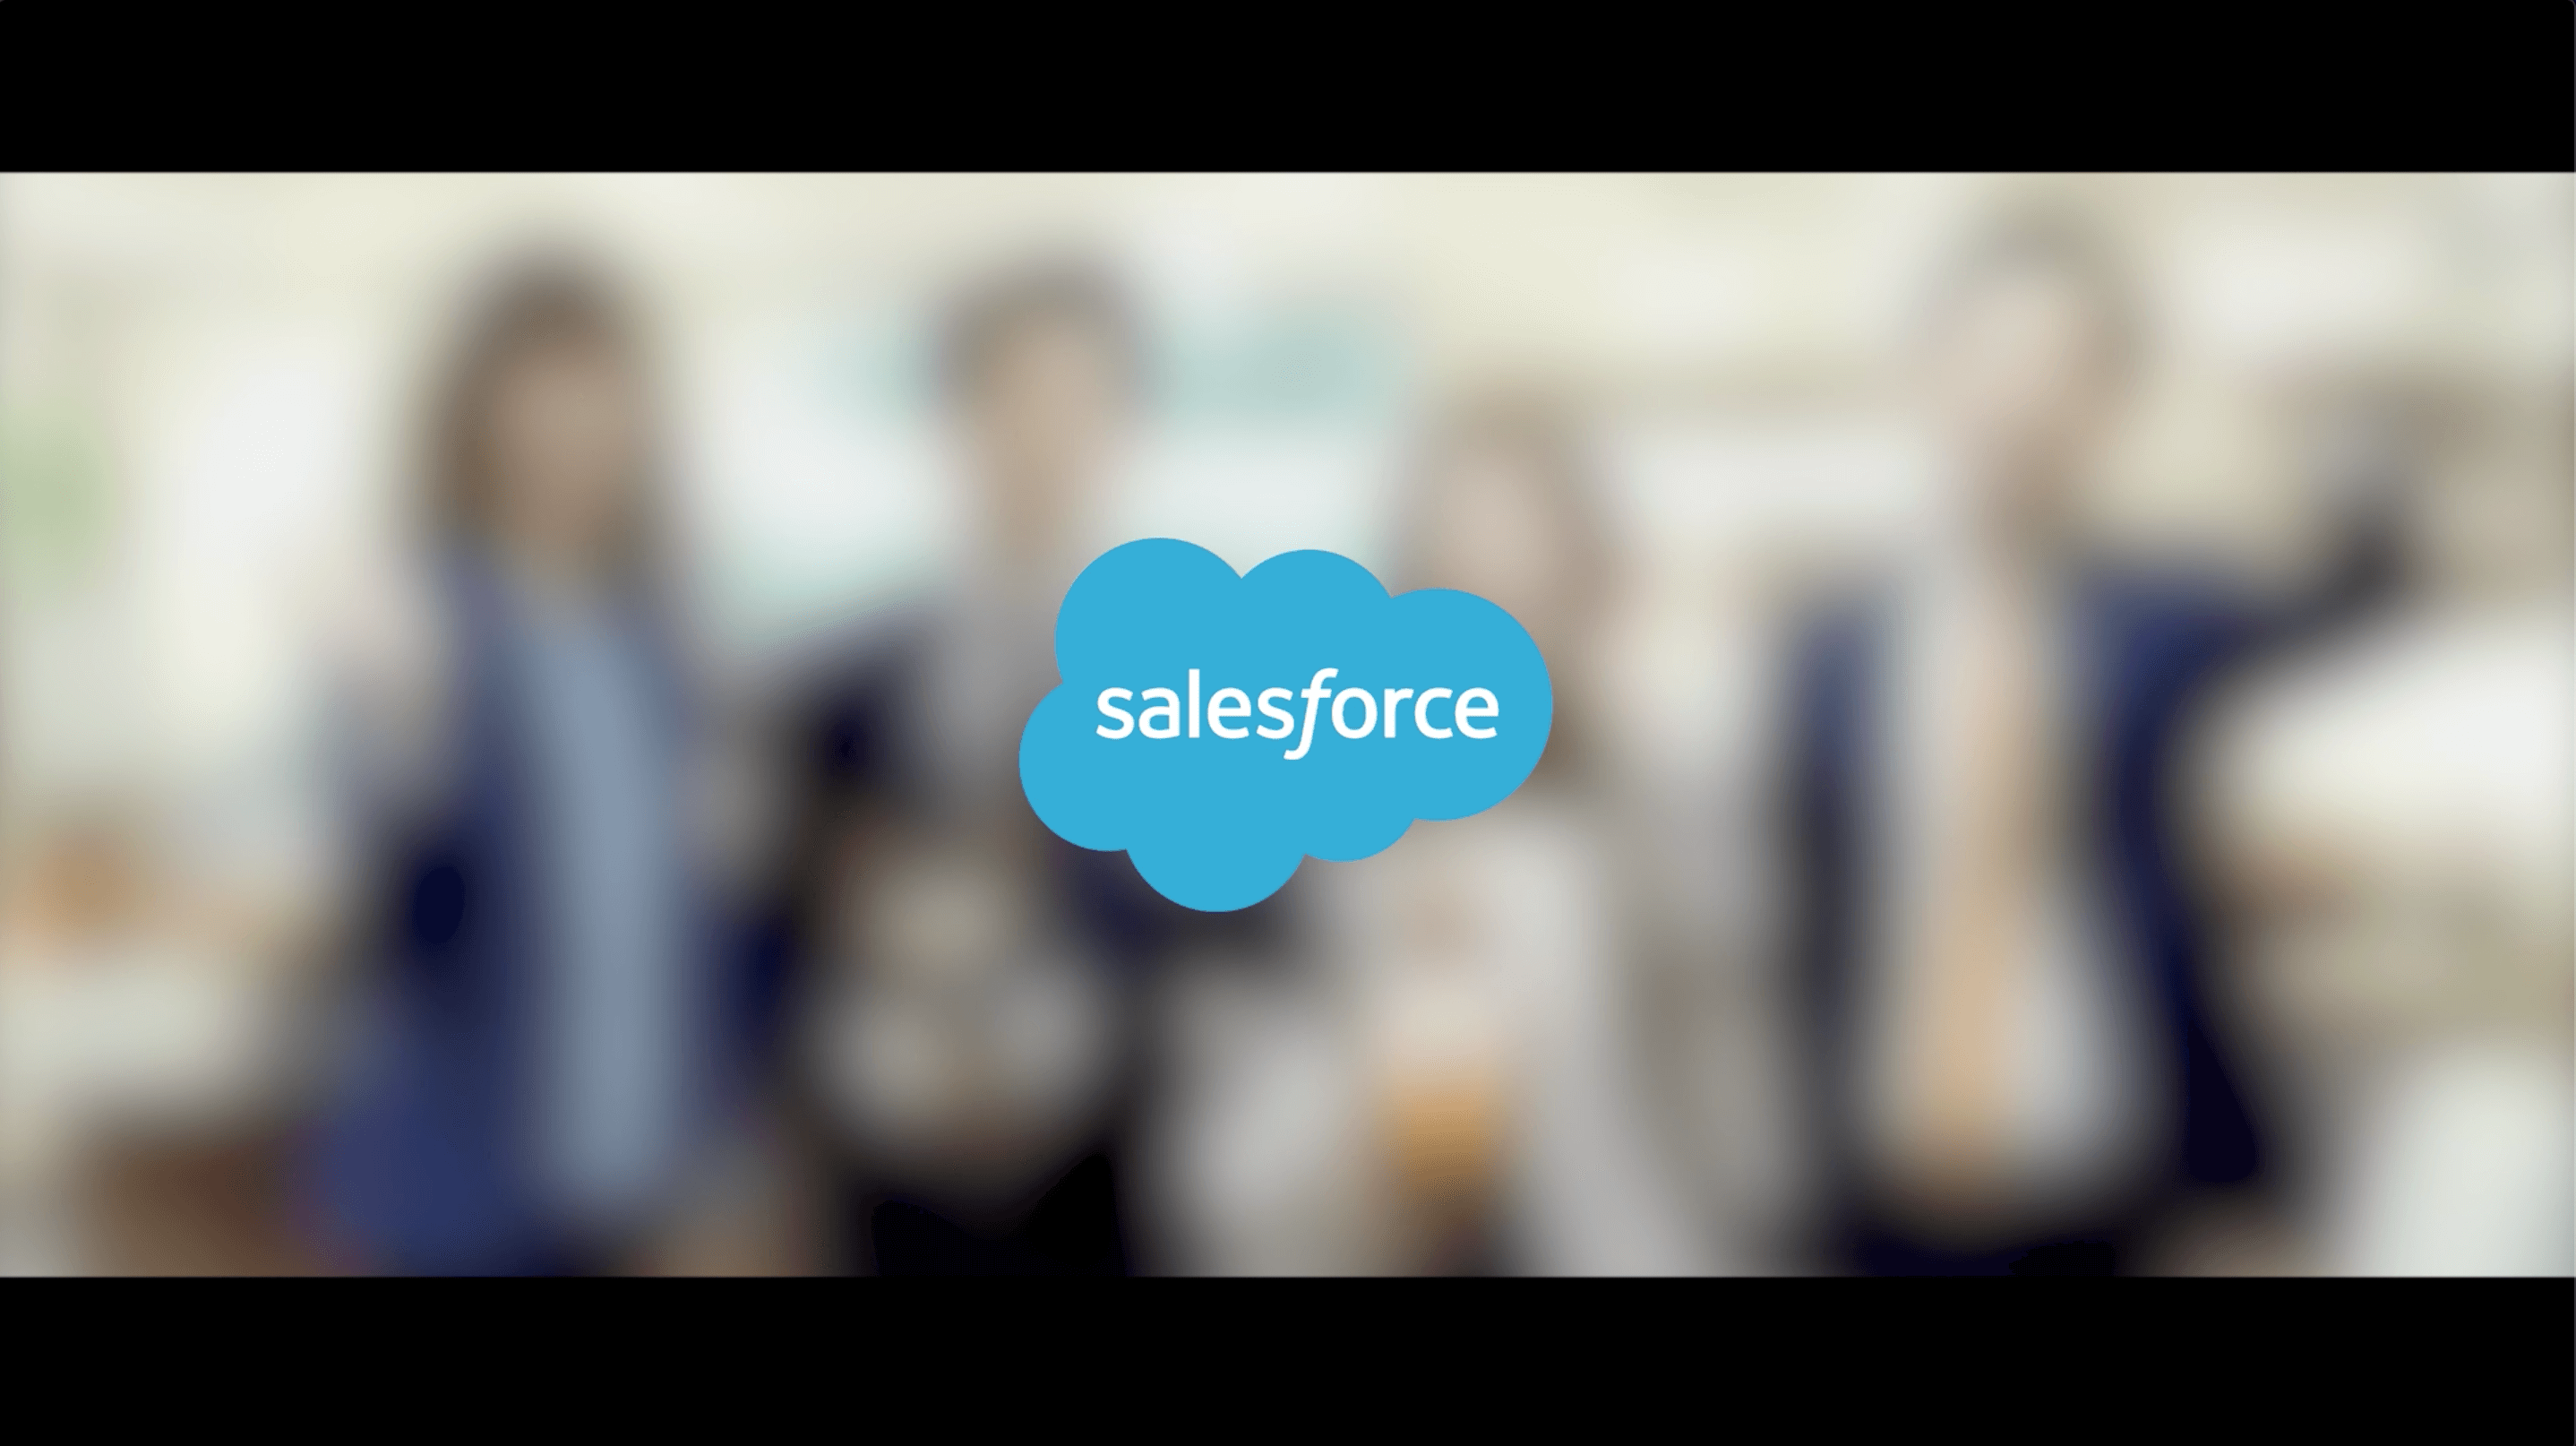 ［弊社制作事例］Salesforce様採用インタビュー